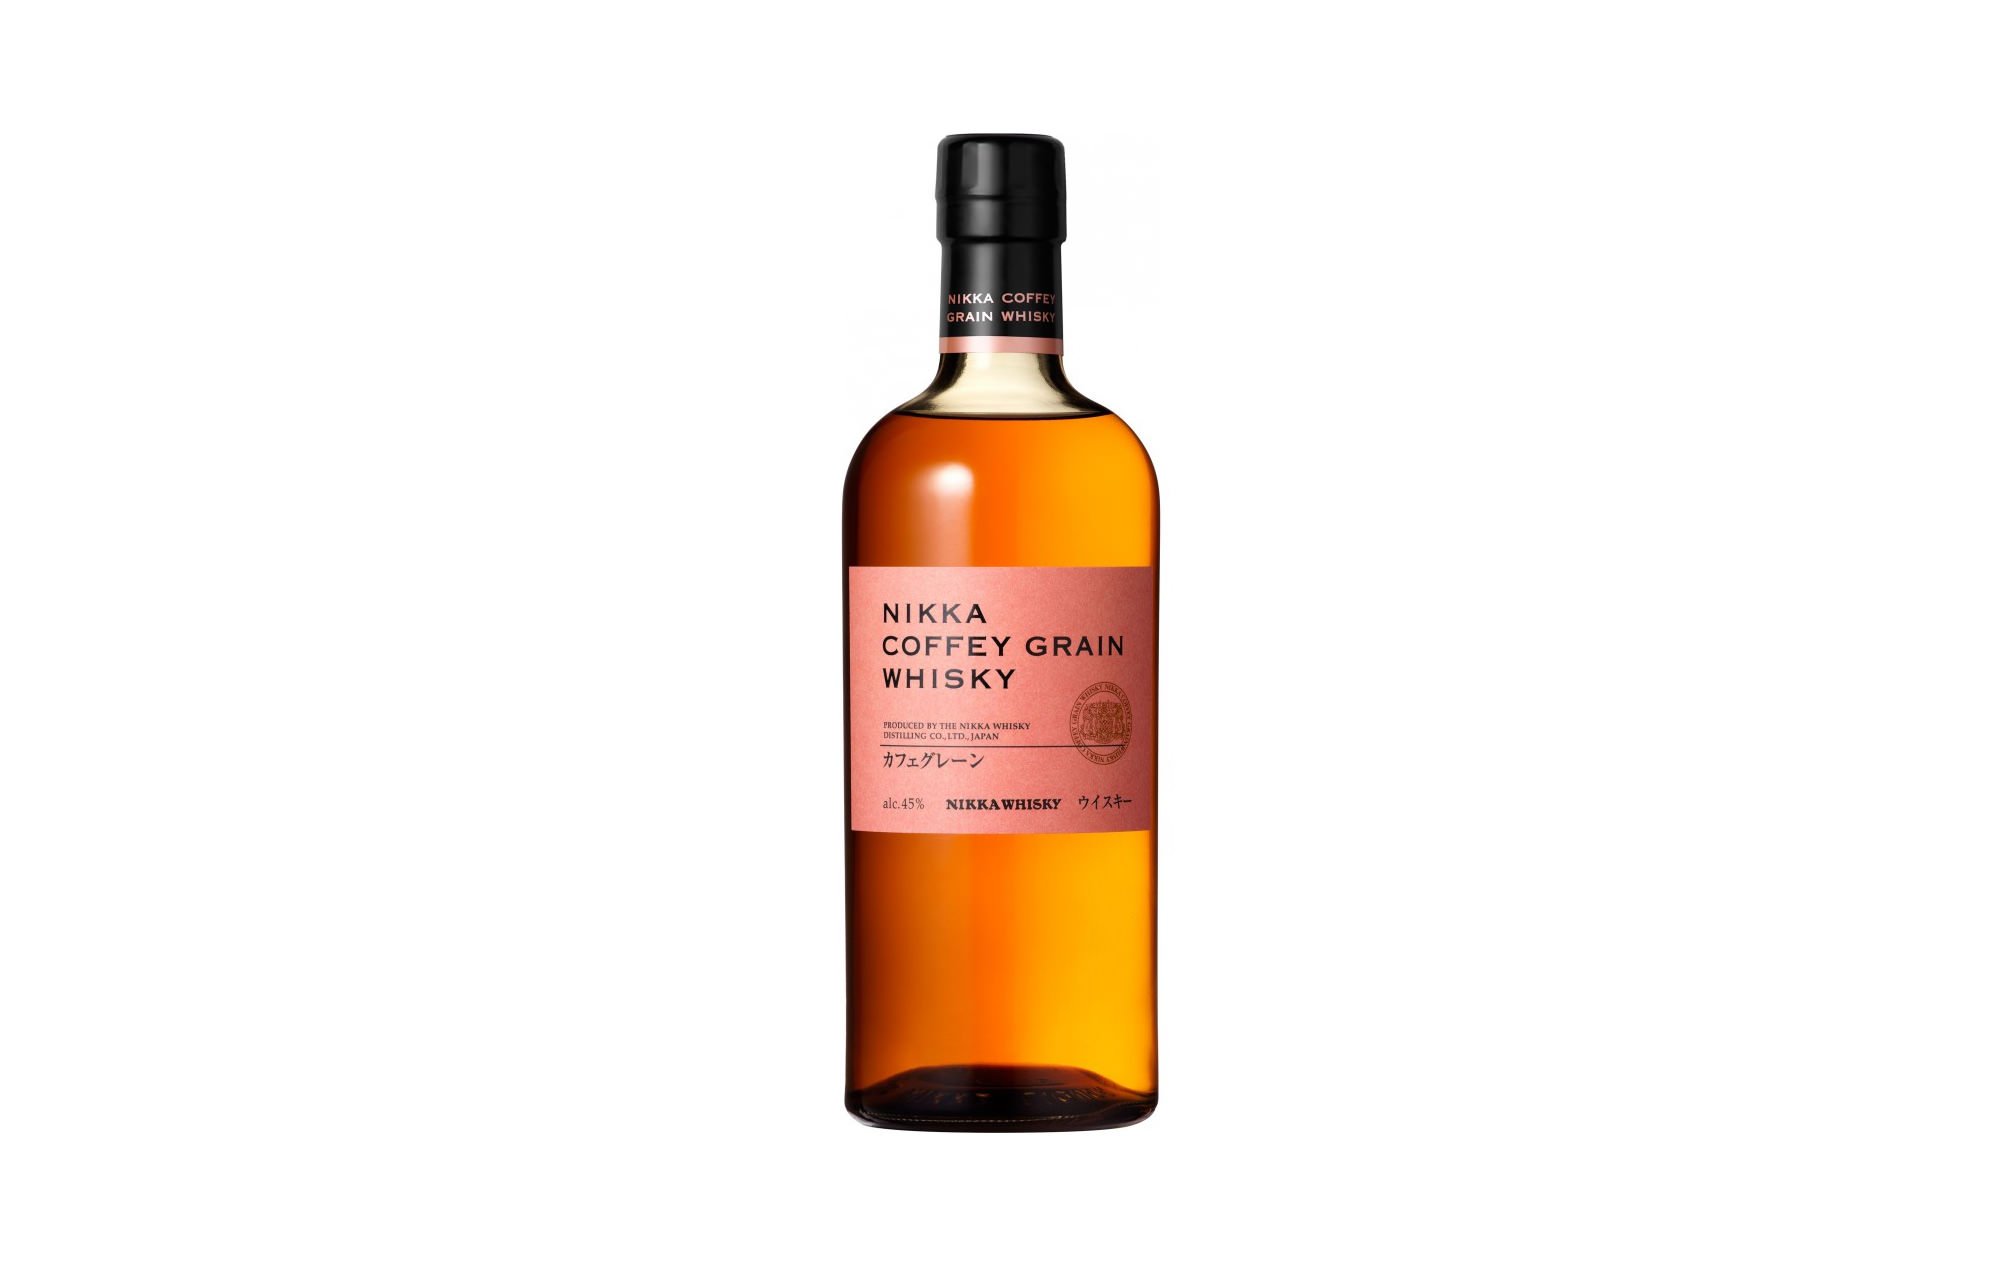 Nikka Coffey Grain Whisky - hương vị lôi cuốn dễ uống